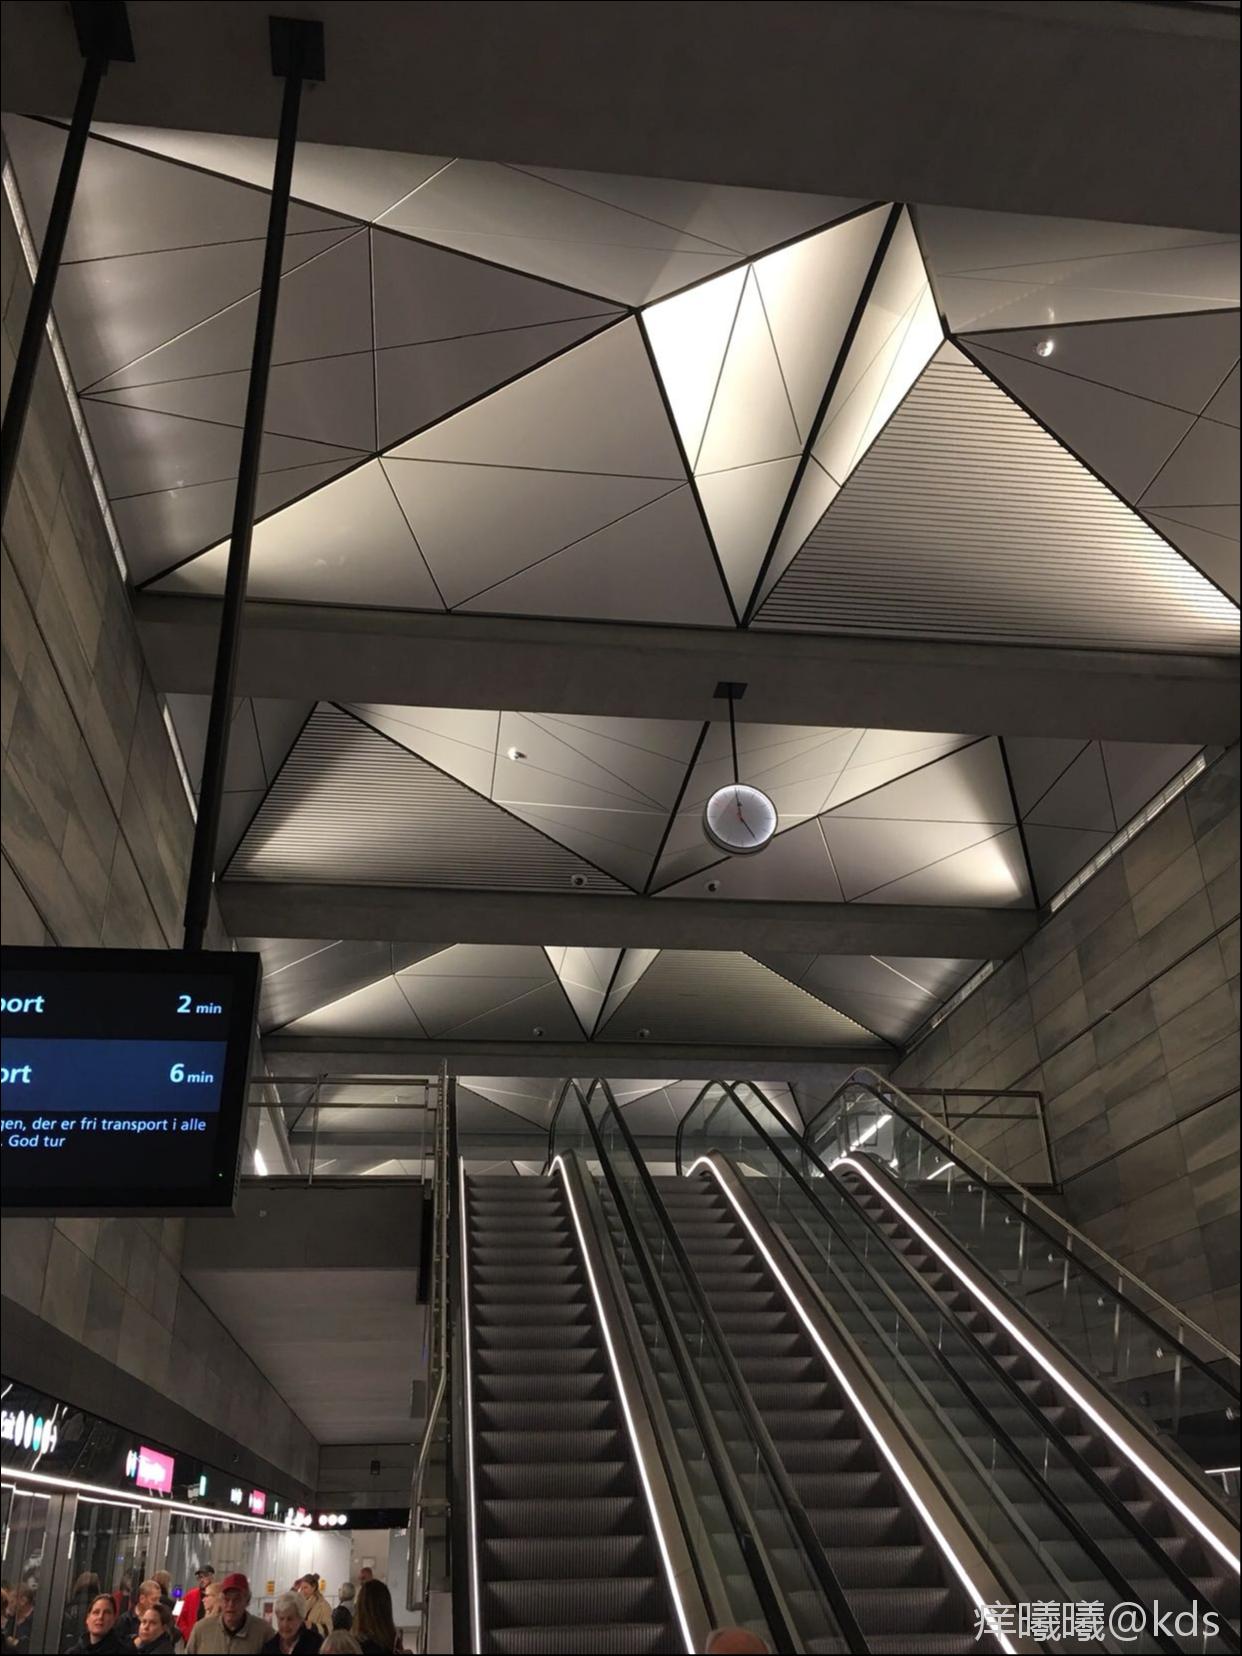 哥本哈根开通新地铁,伊拉哈开心…造了十年